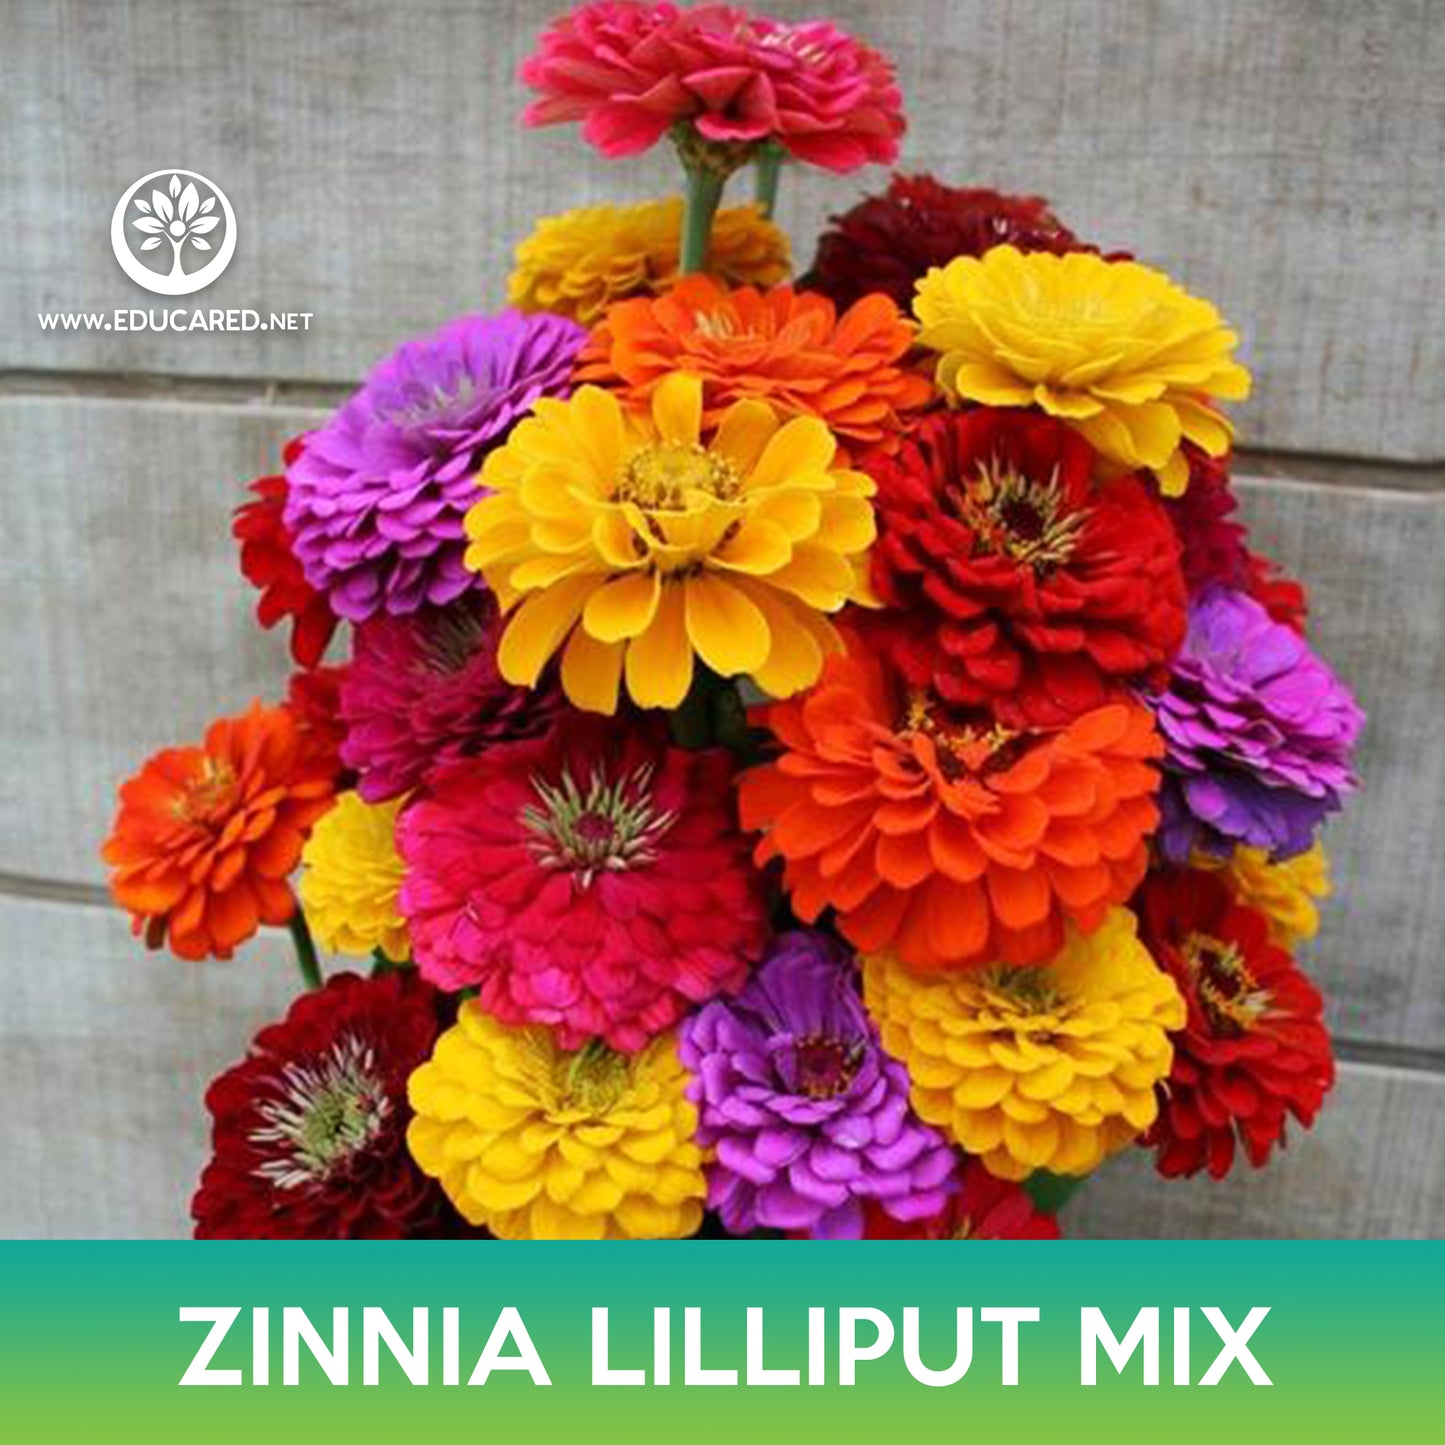 Zinnia Lilliput Mix Seed